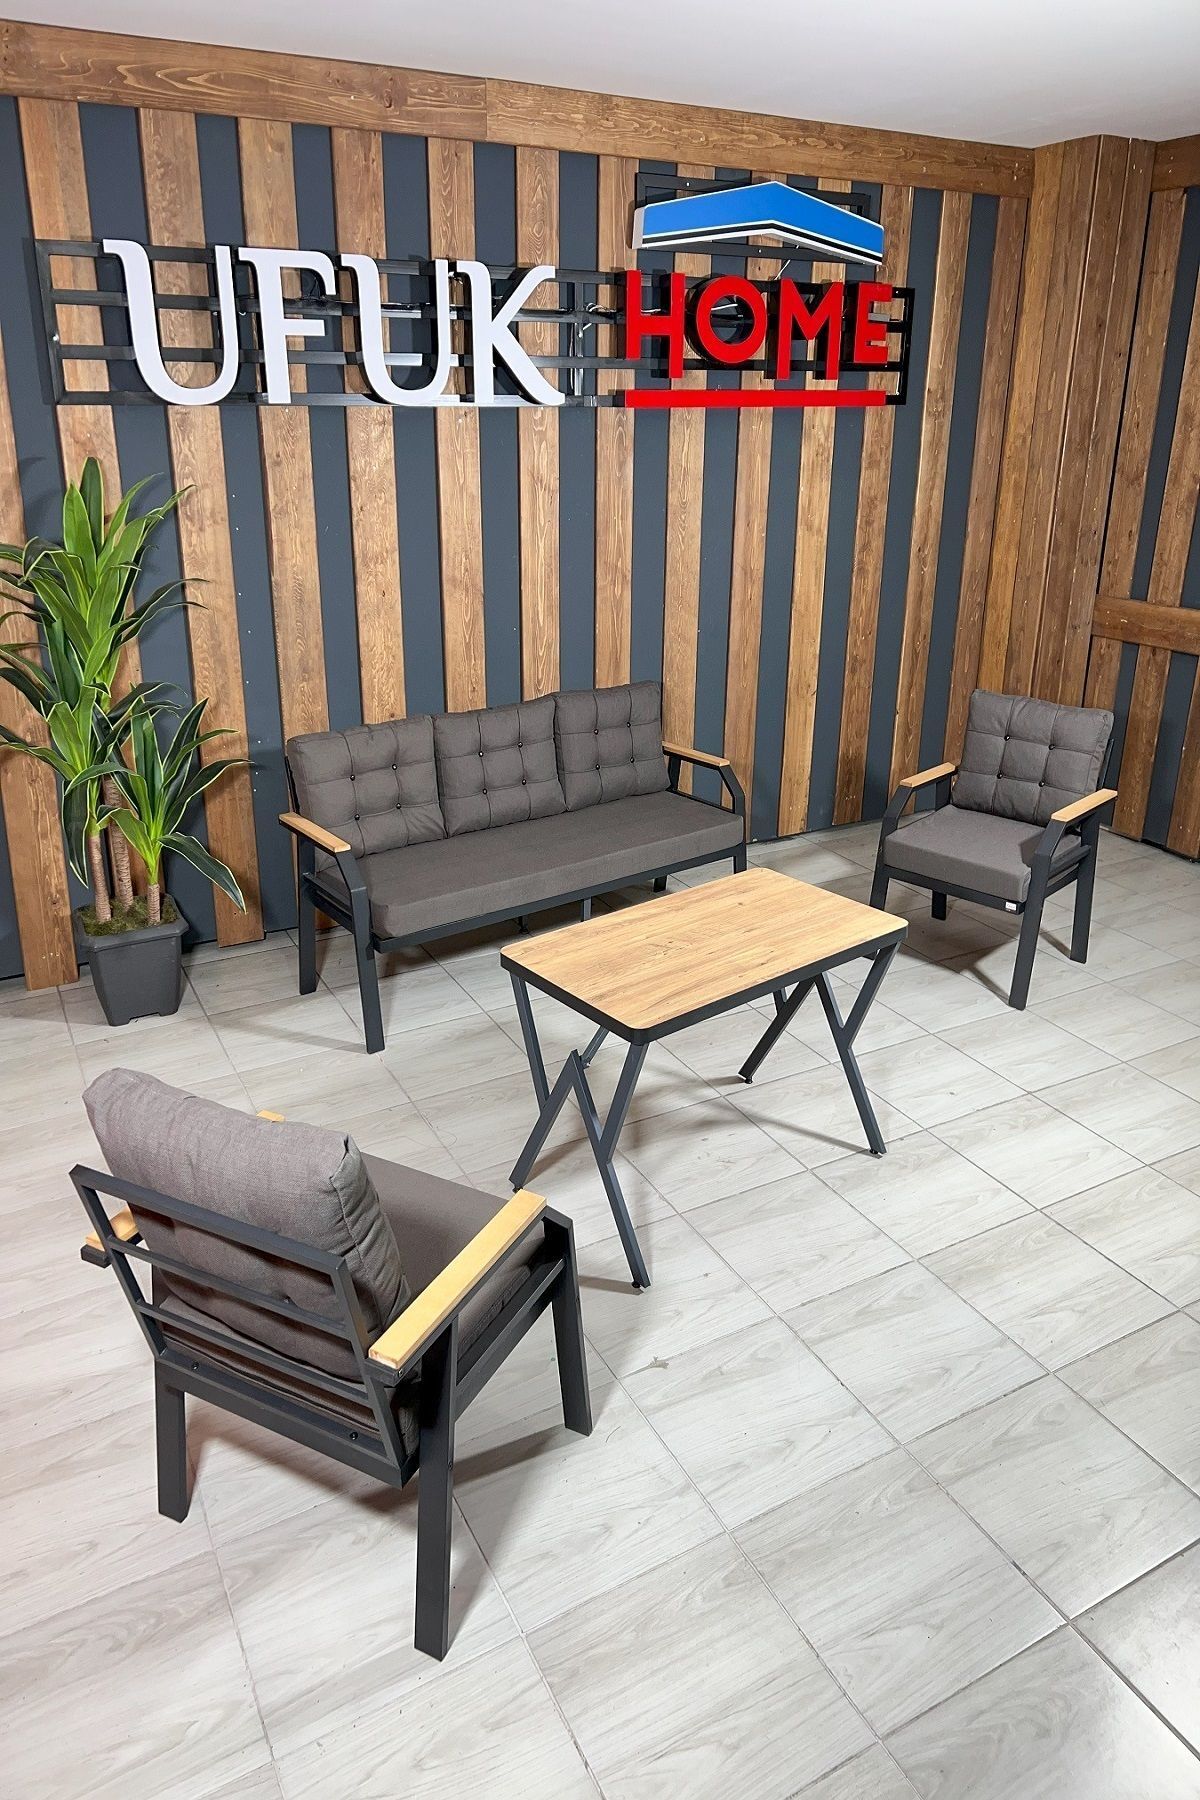 UFUK HOME Kavacık 3+1+1+masa Bahçe Mobilyası, Balkon Çay Seti, Bahçe Koltuk Takımı